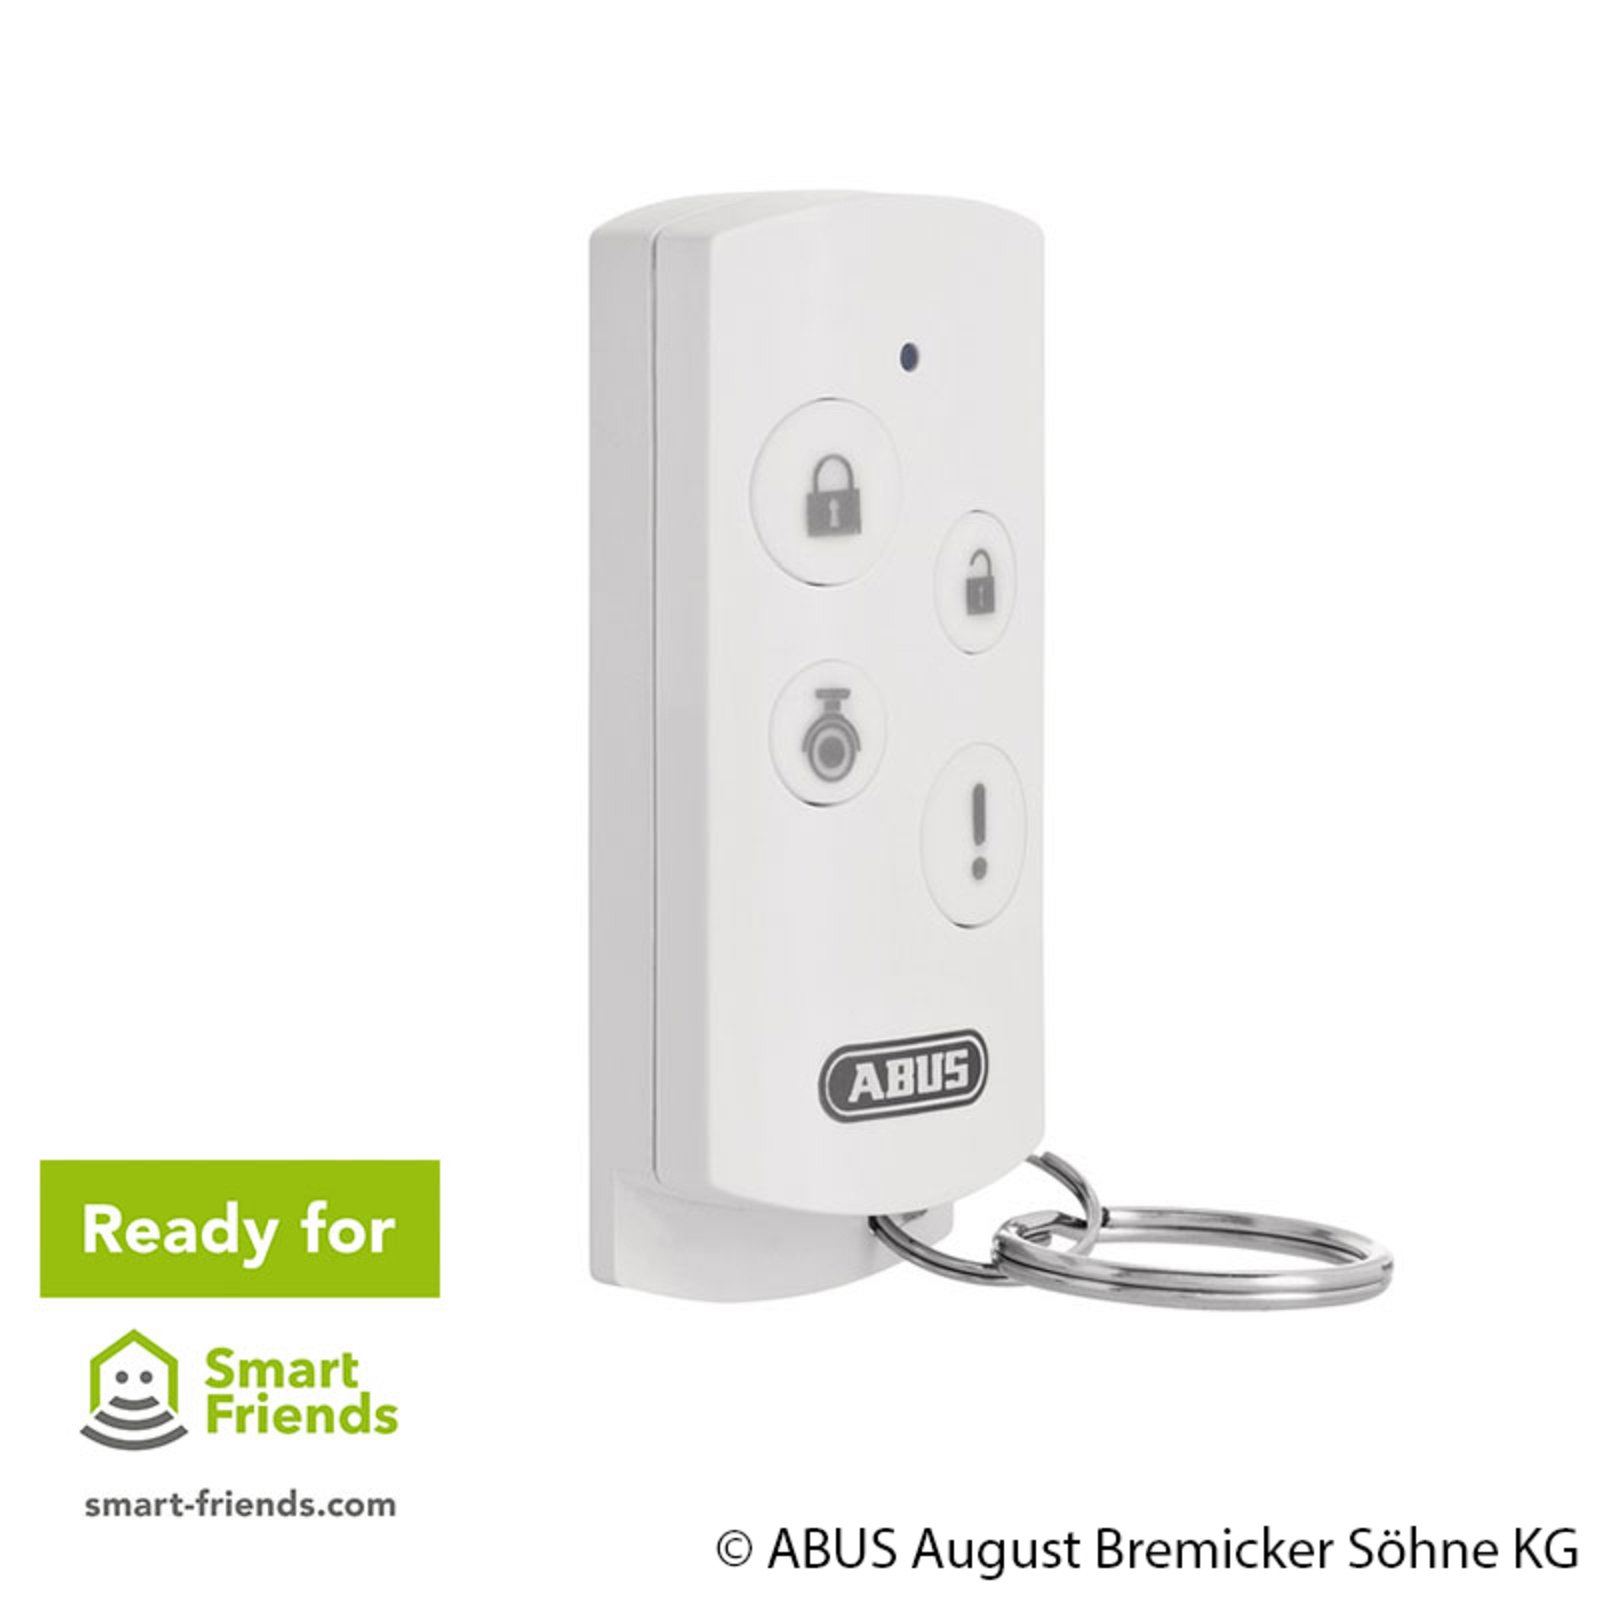 ABUS Smartvest afstandsbediening